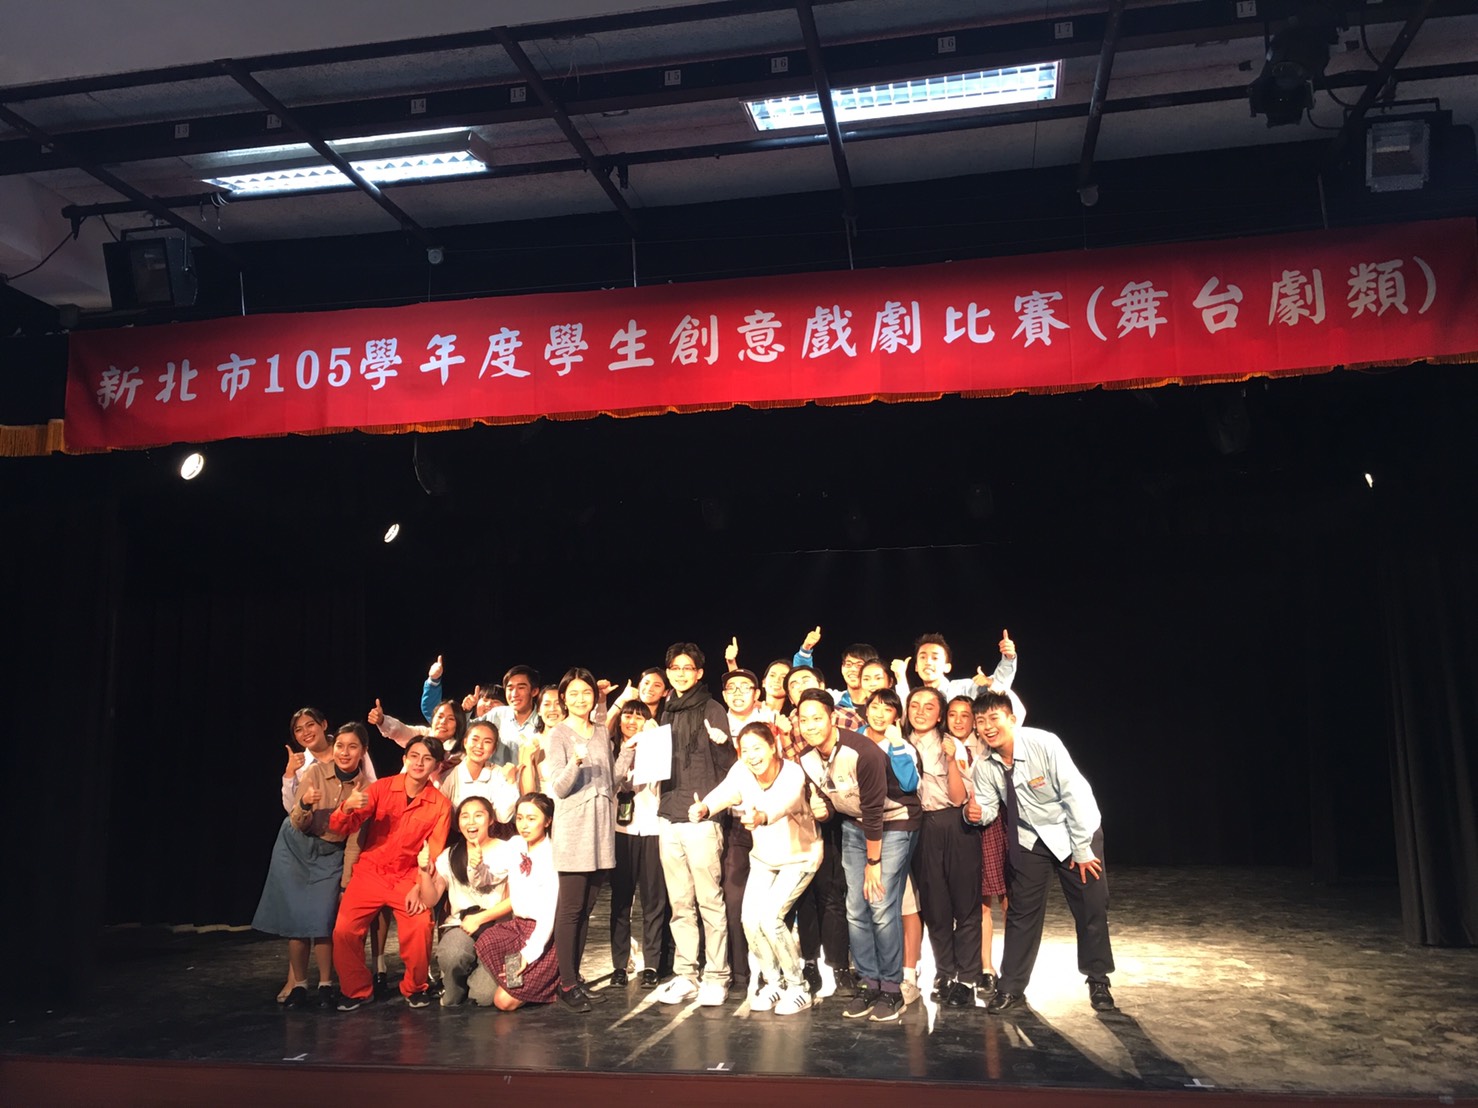 【得獎】本校參加新北市學生創意戲劇比賽-舞台劇類榮獲特優